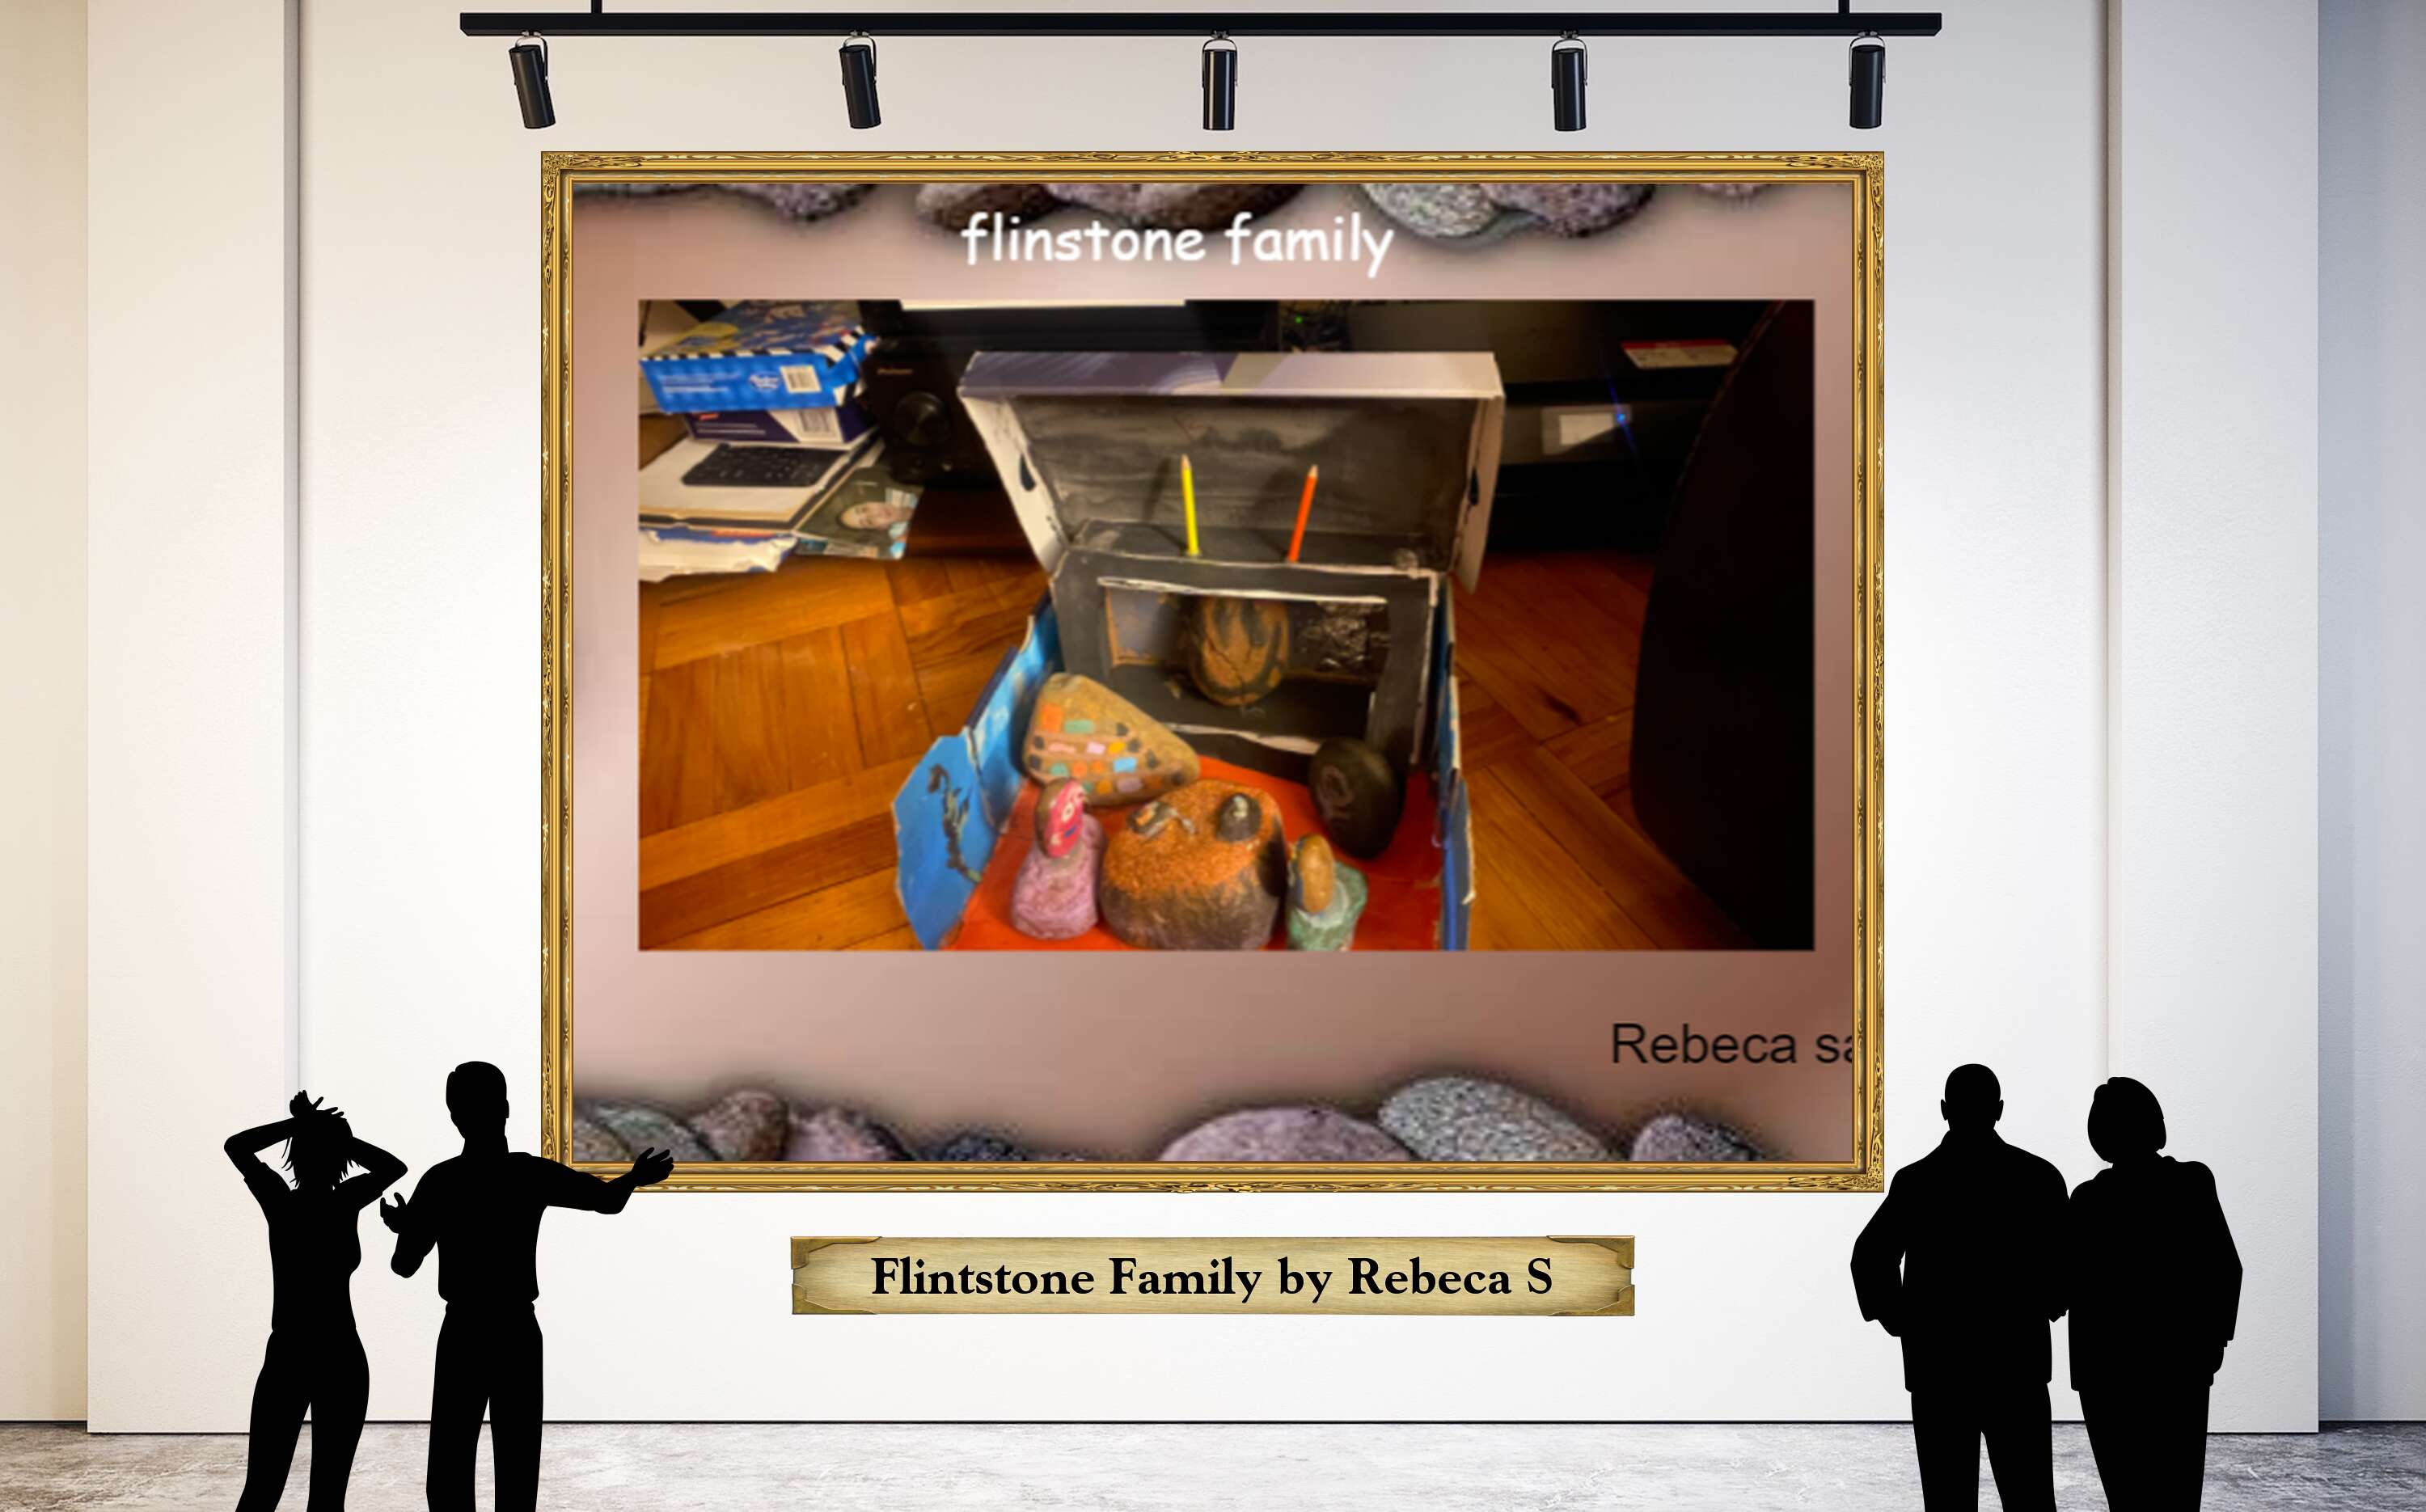 Flintstone Family by Rebeca S